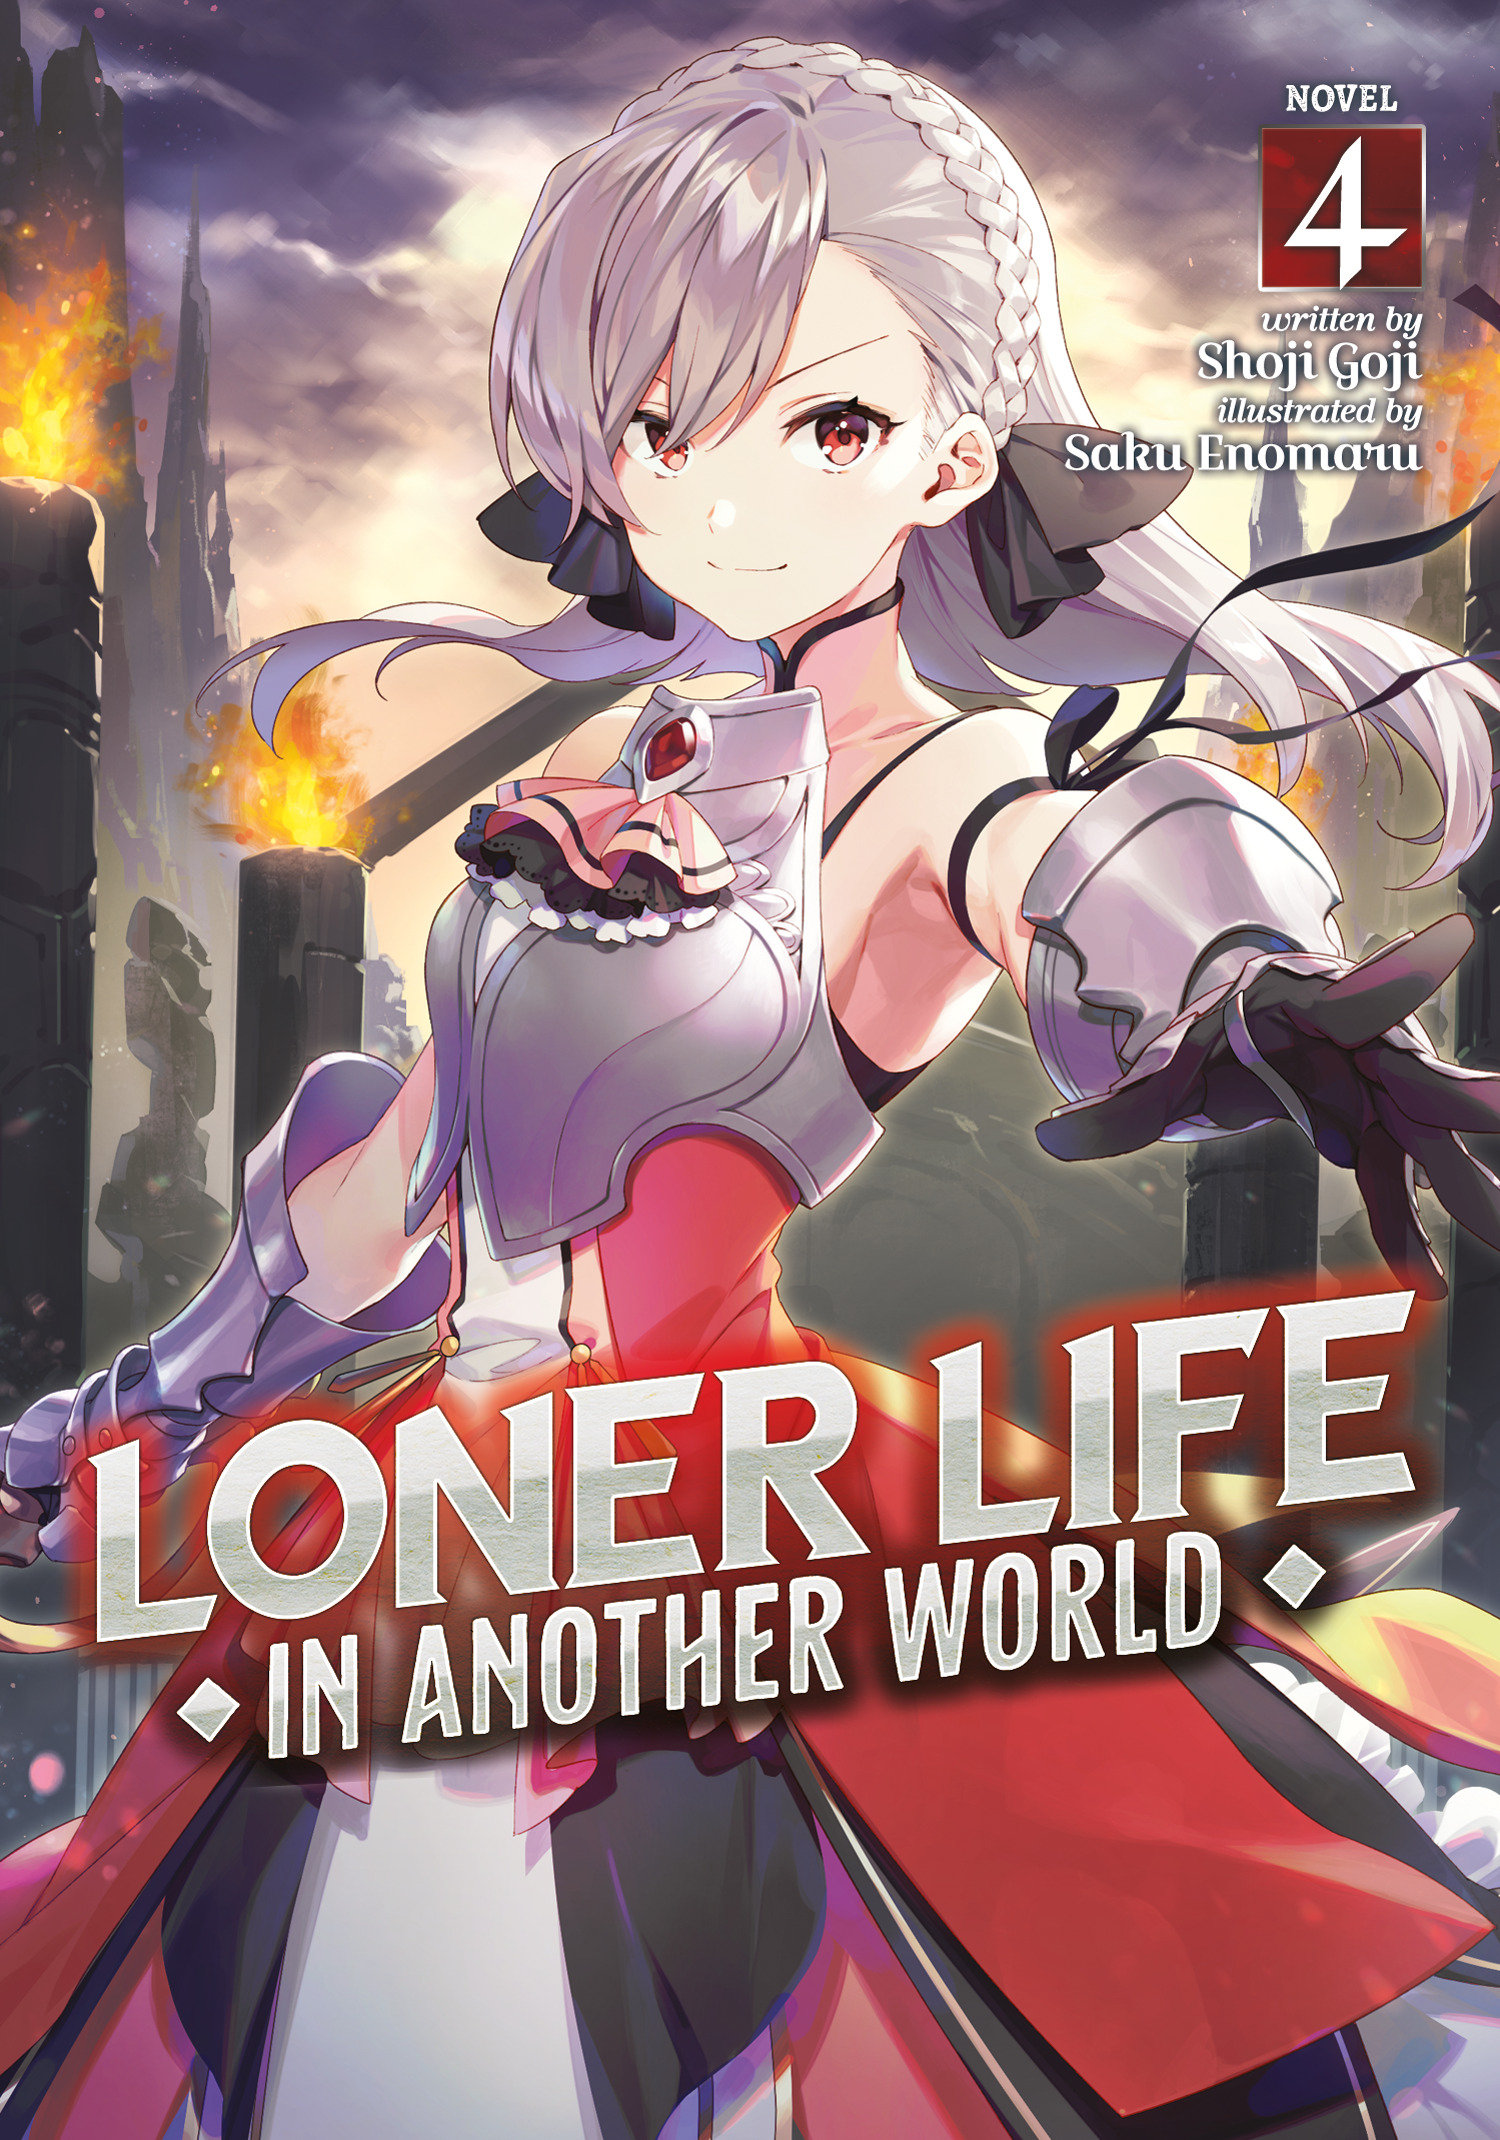 Loner Life in Another World Light Novel Volume 4